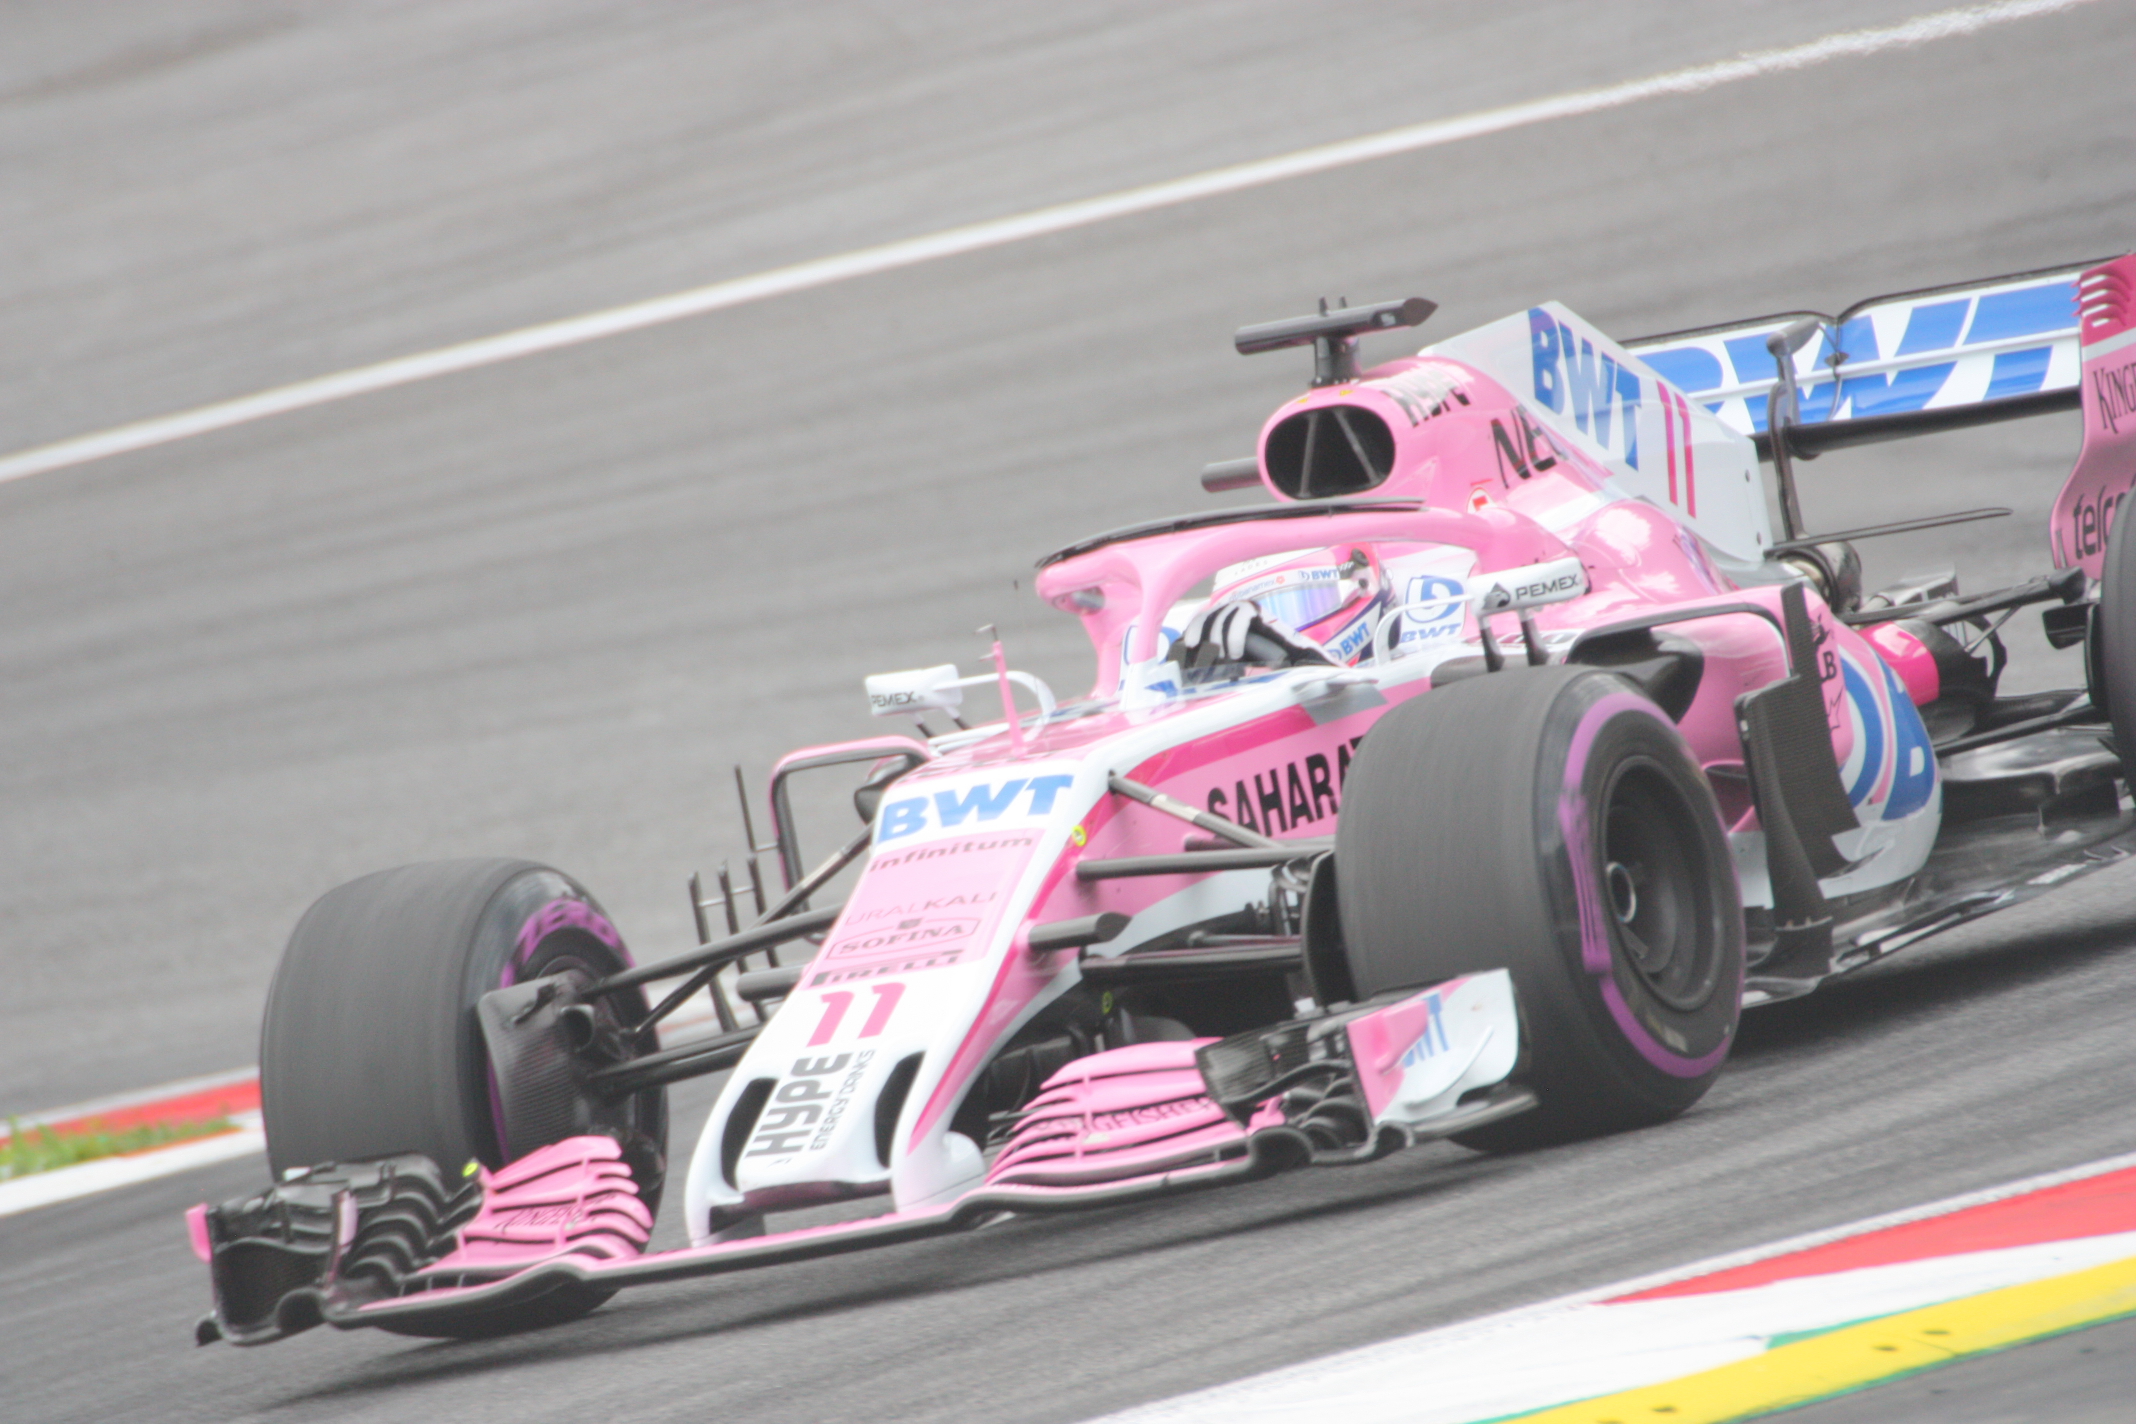 Také Force India se vracely z Rakouska s kupou bodů. Ocon dojel 6., Perez hned za ním